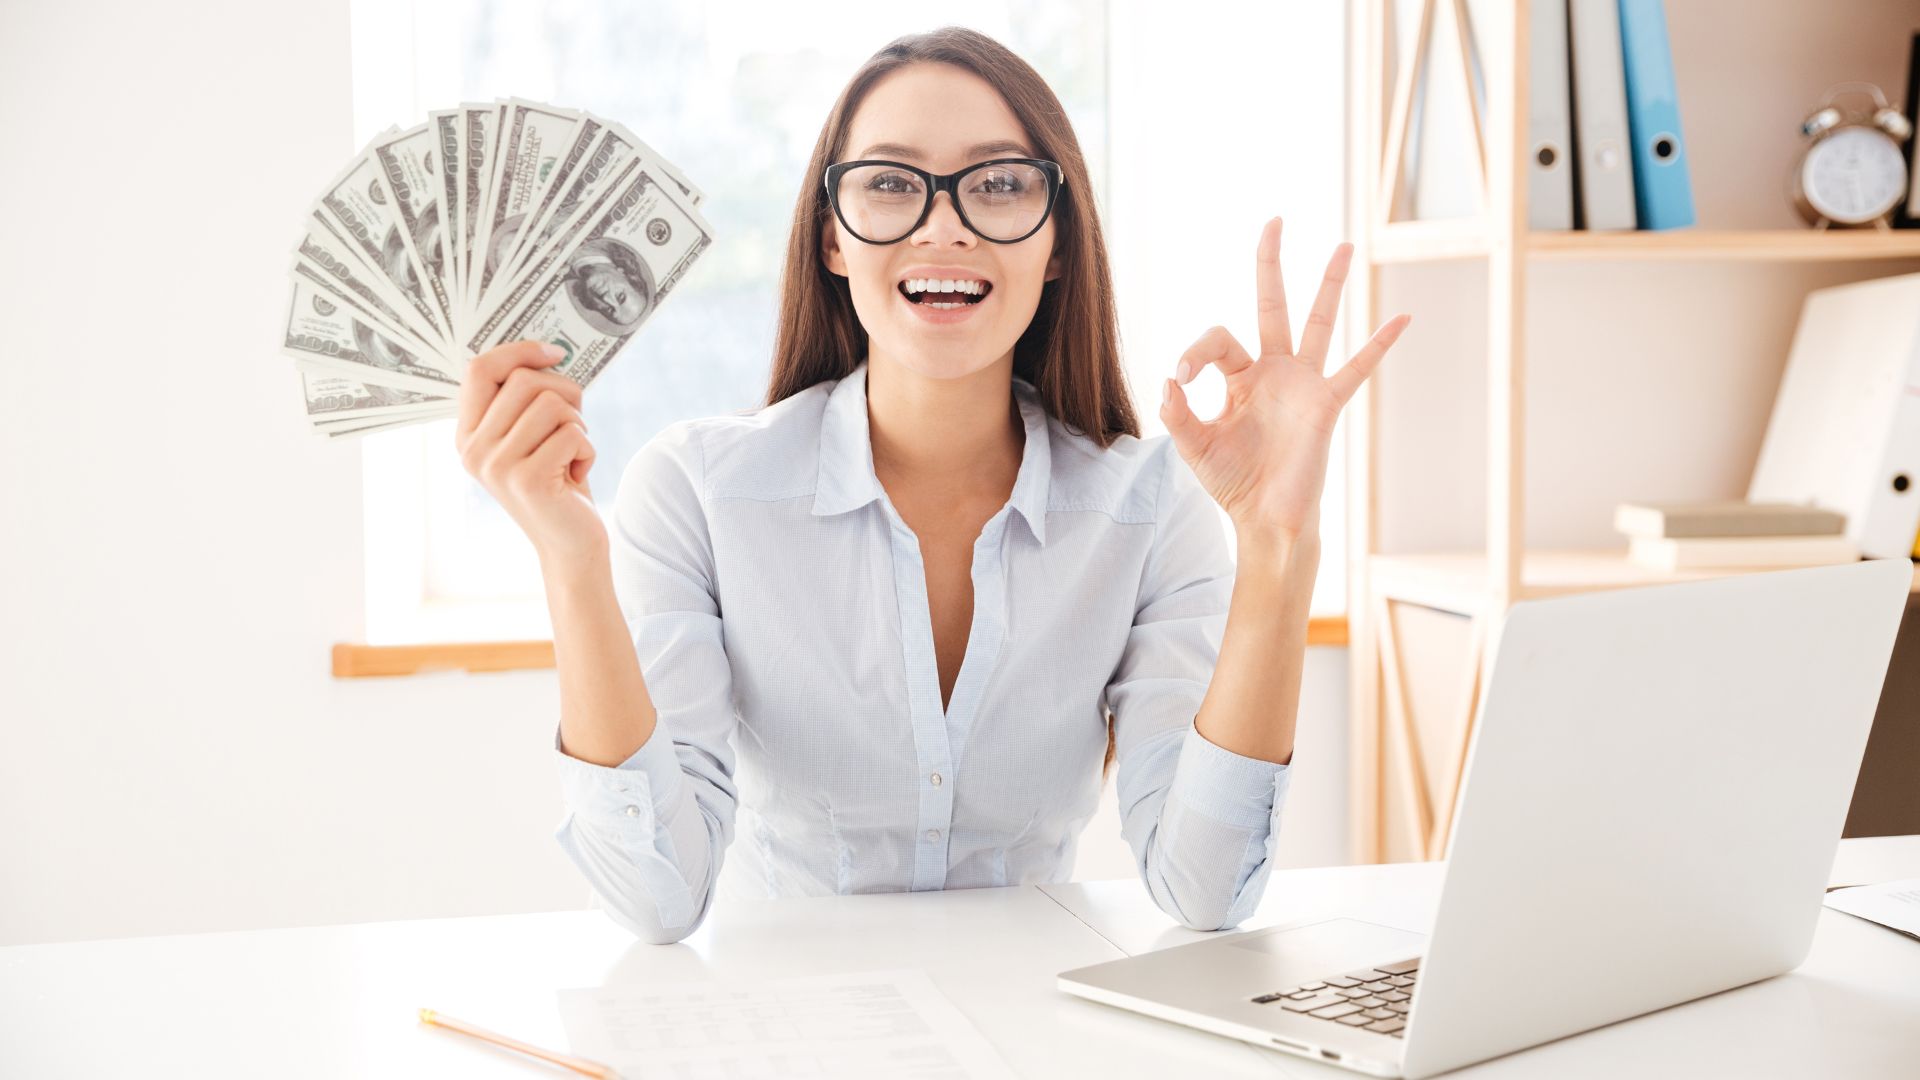 Femme heureuse avec argent faisant signe OK devant ordinateur